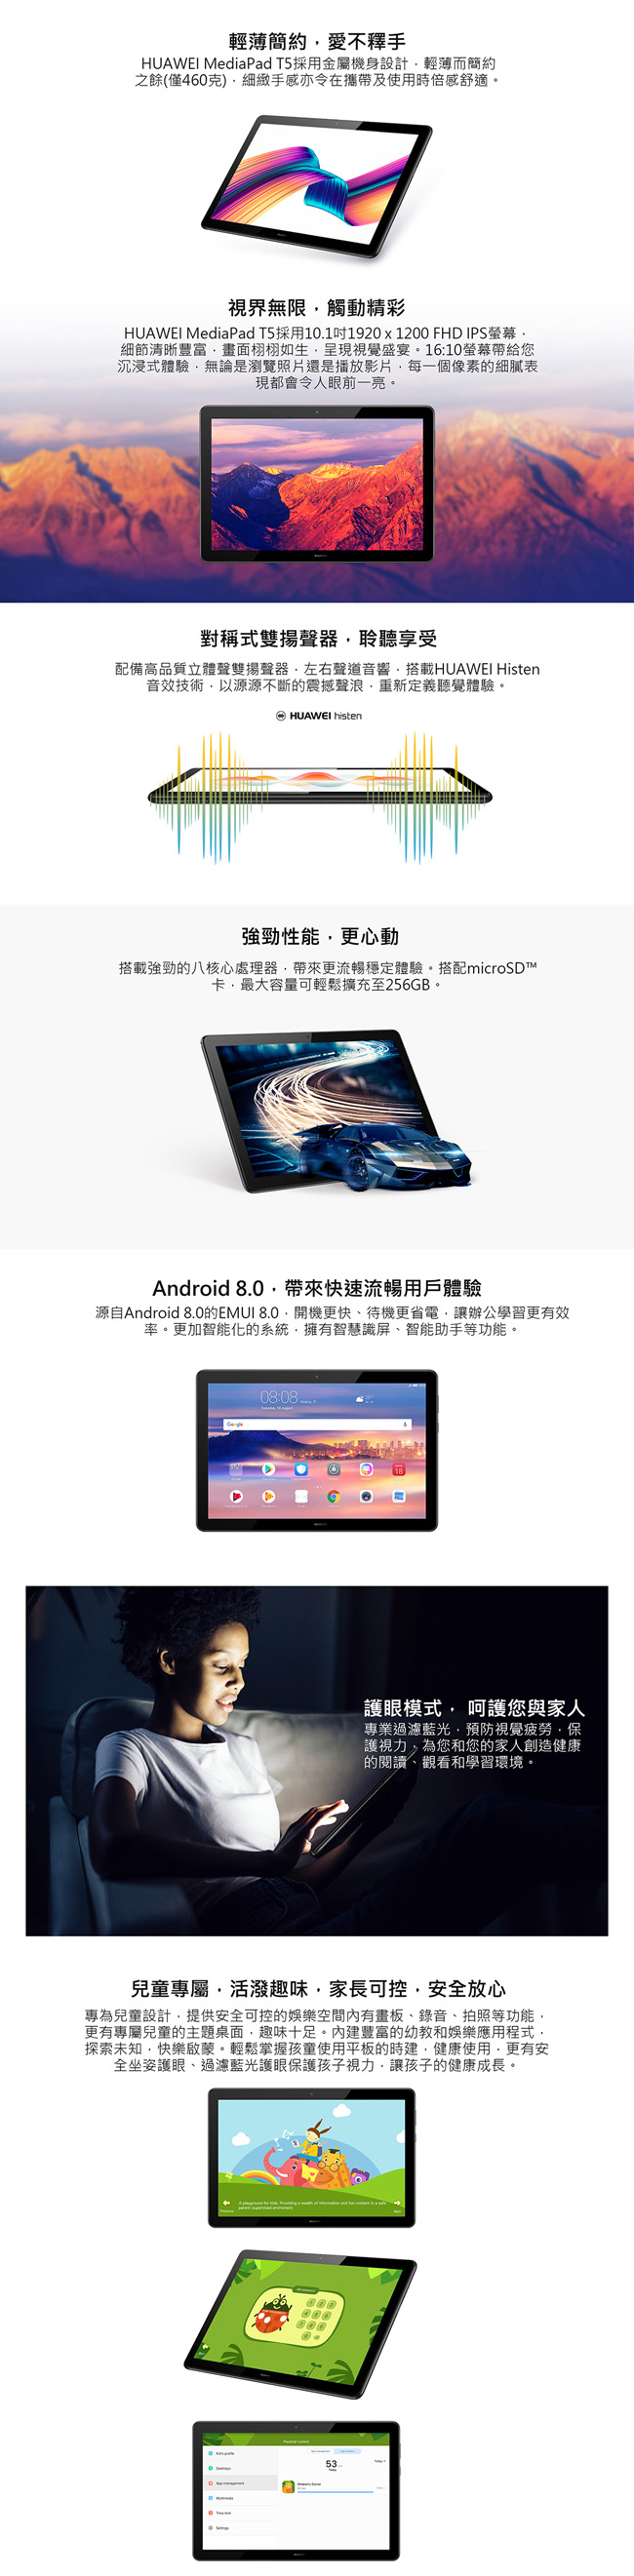 華為 MediaPad T5 10 10.1吋八核心平板 (3G/32G)